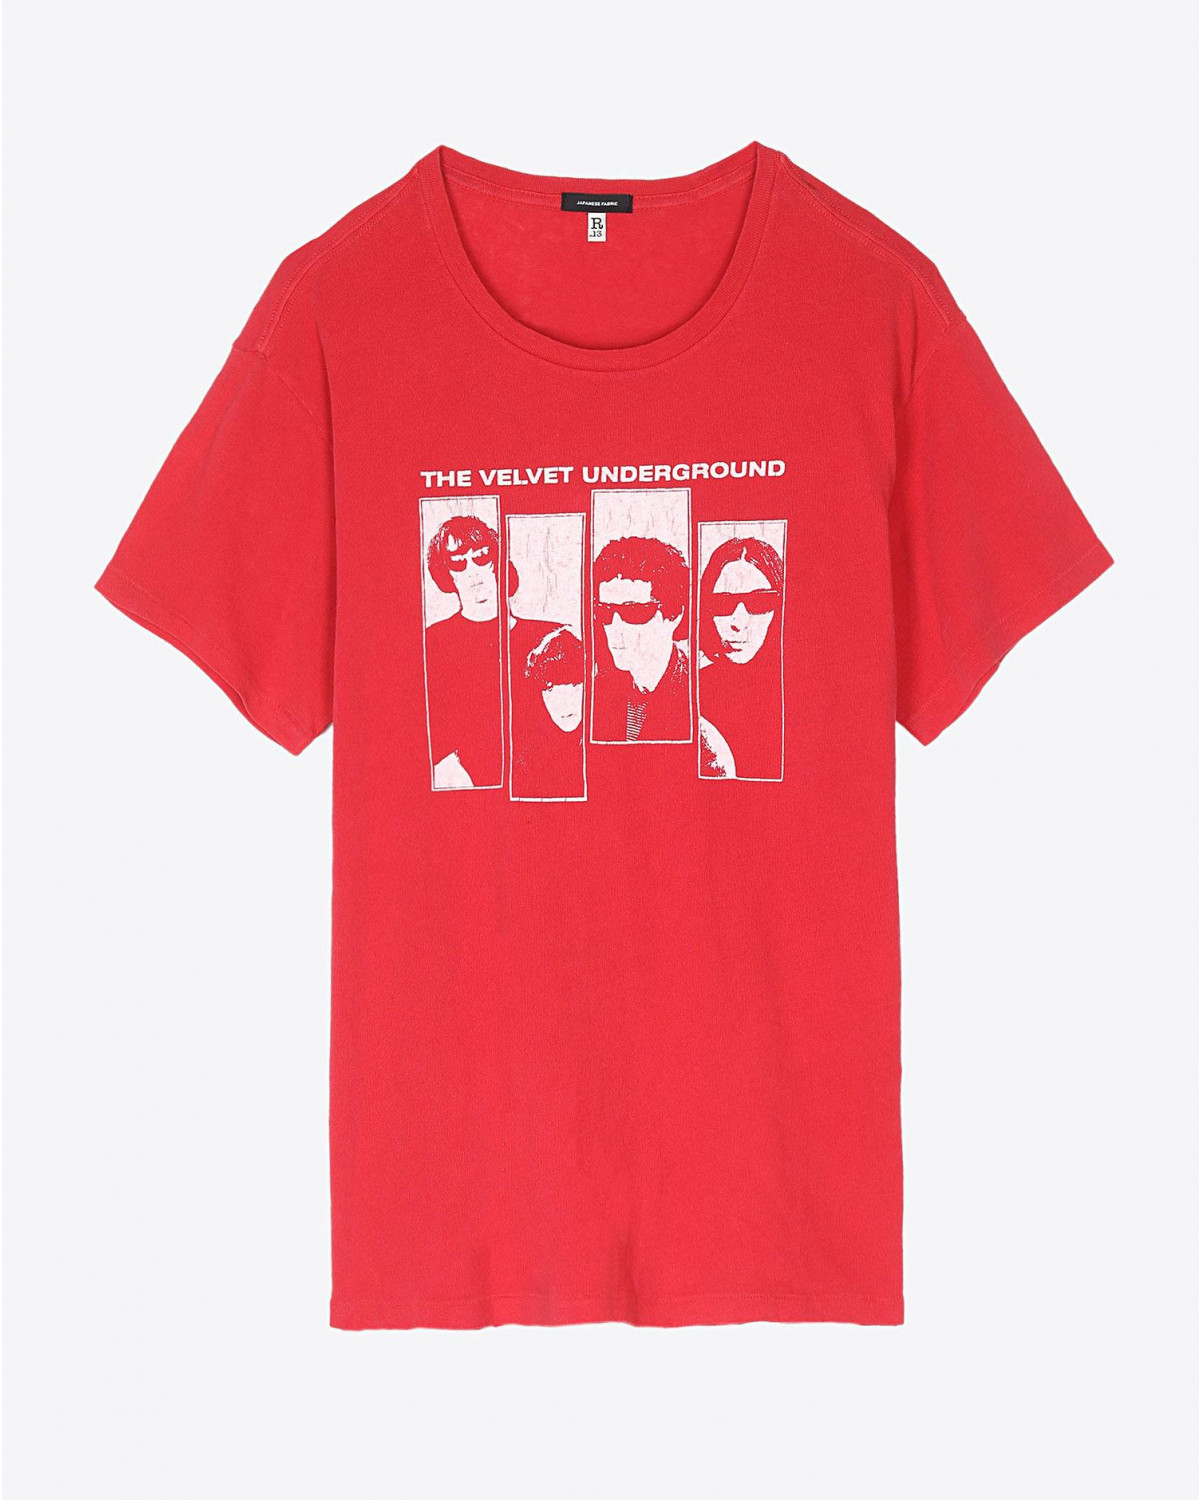 Tee Shirt R13 Denim Collection Velvet Underground Group Shot Boy T - Red
